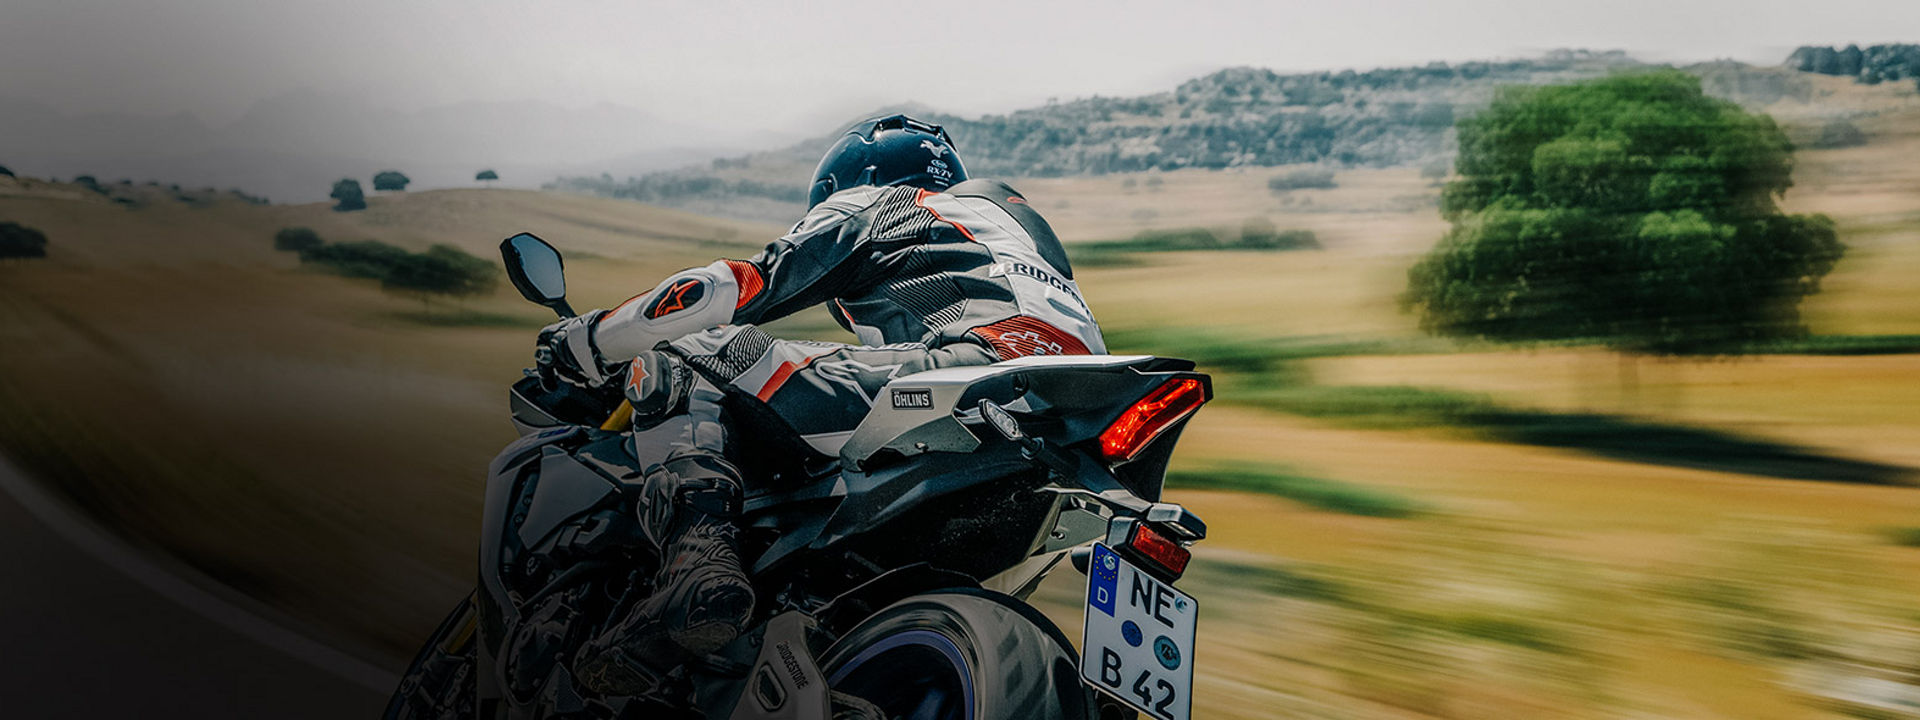 L'immagine mostra un motociclista sulla sua moto equipaggiata con pneumatici sportivi Bridgestone.